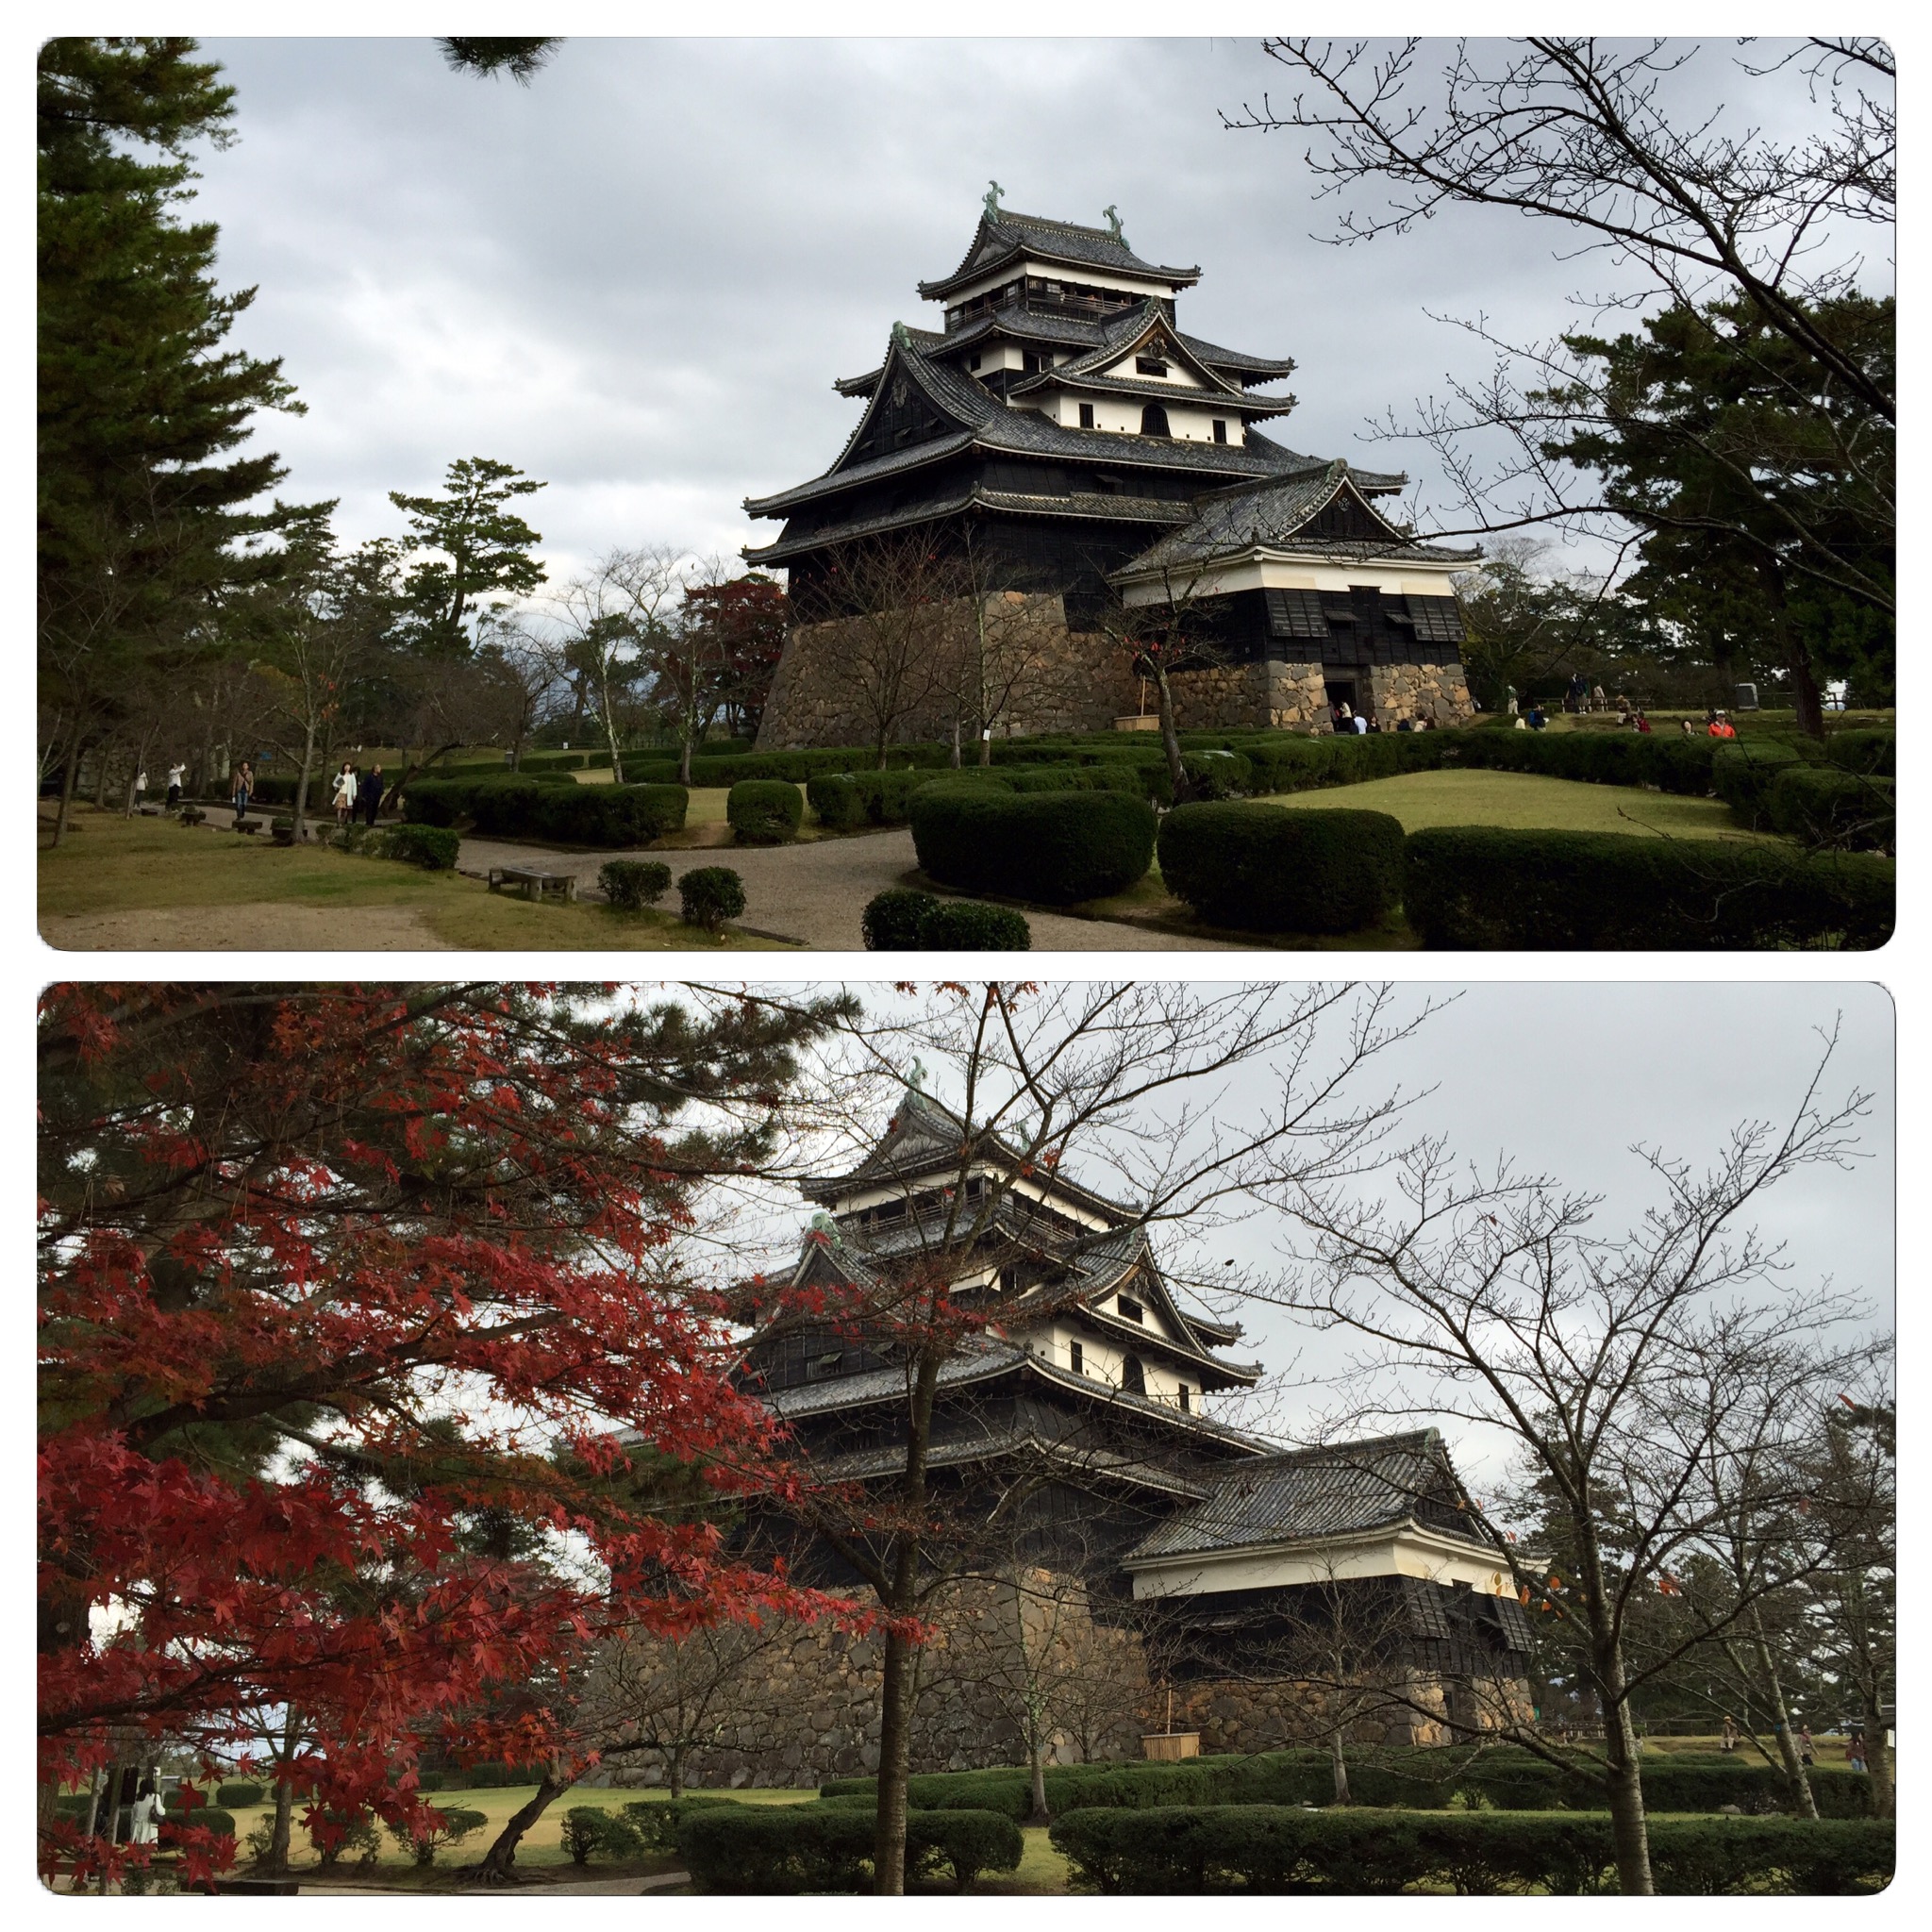 松江城の写真が綺麗に撮れる場所